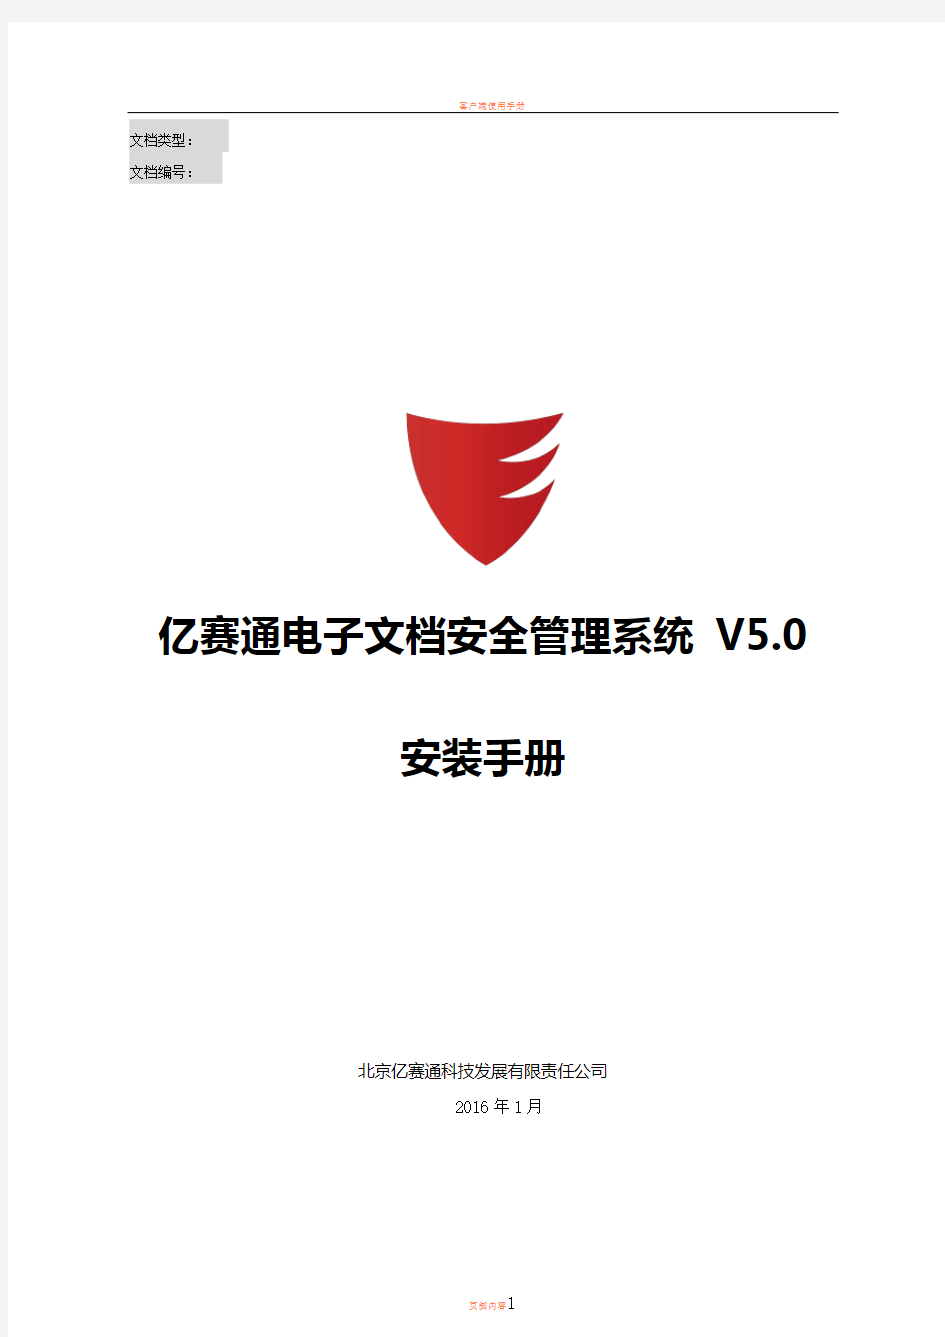 亿赛通电子文档安全管理系统V5.0--系统安装手册V11